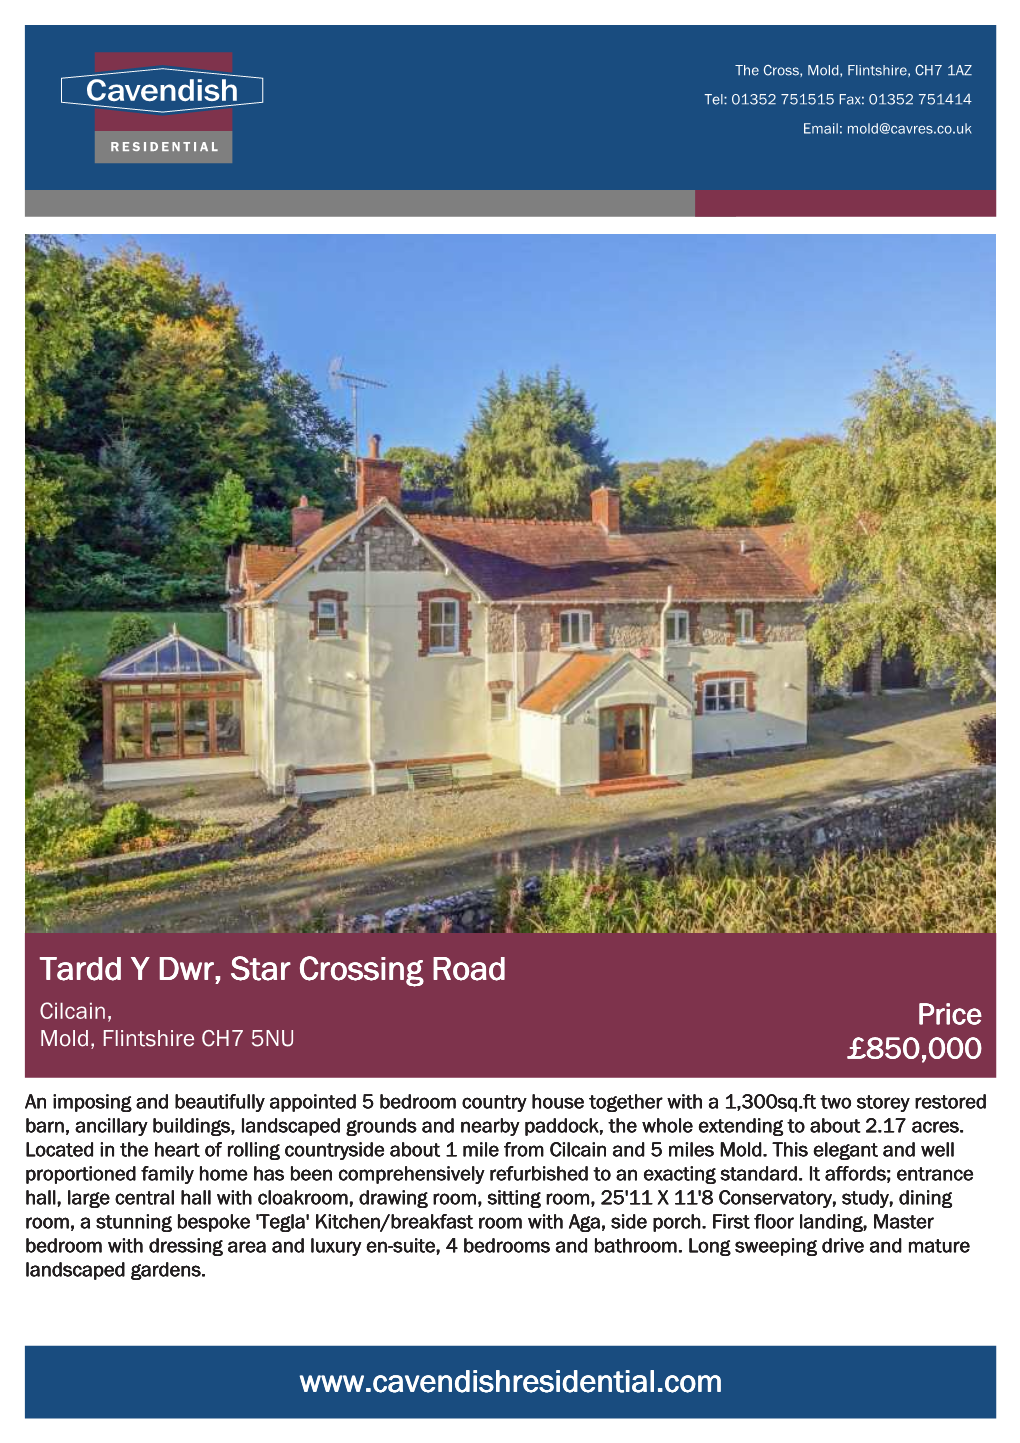 Tardd Y Dwr, Star Crossing Road Cilcain, Price Mold, Flintshire CH7 5NU £850,000